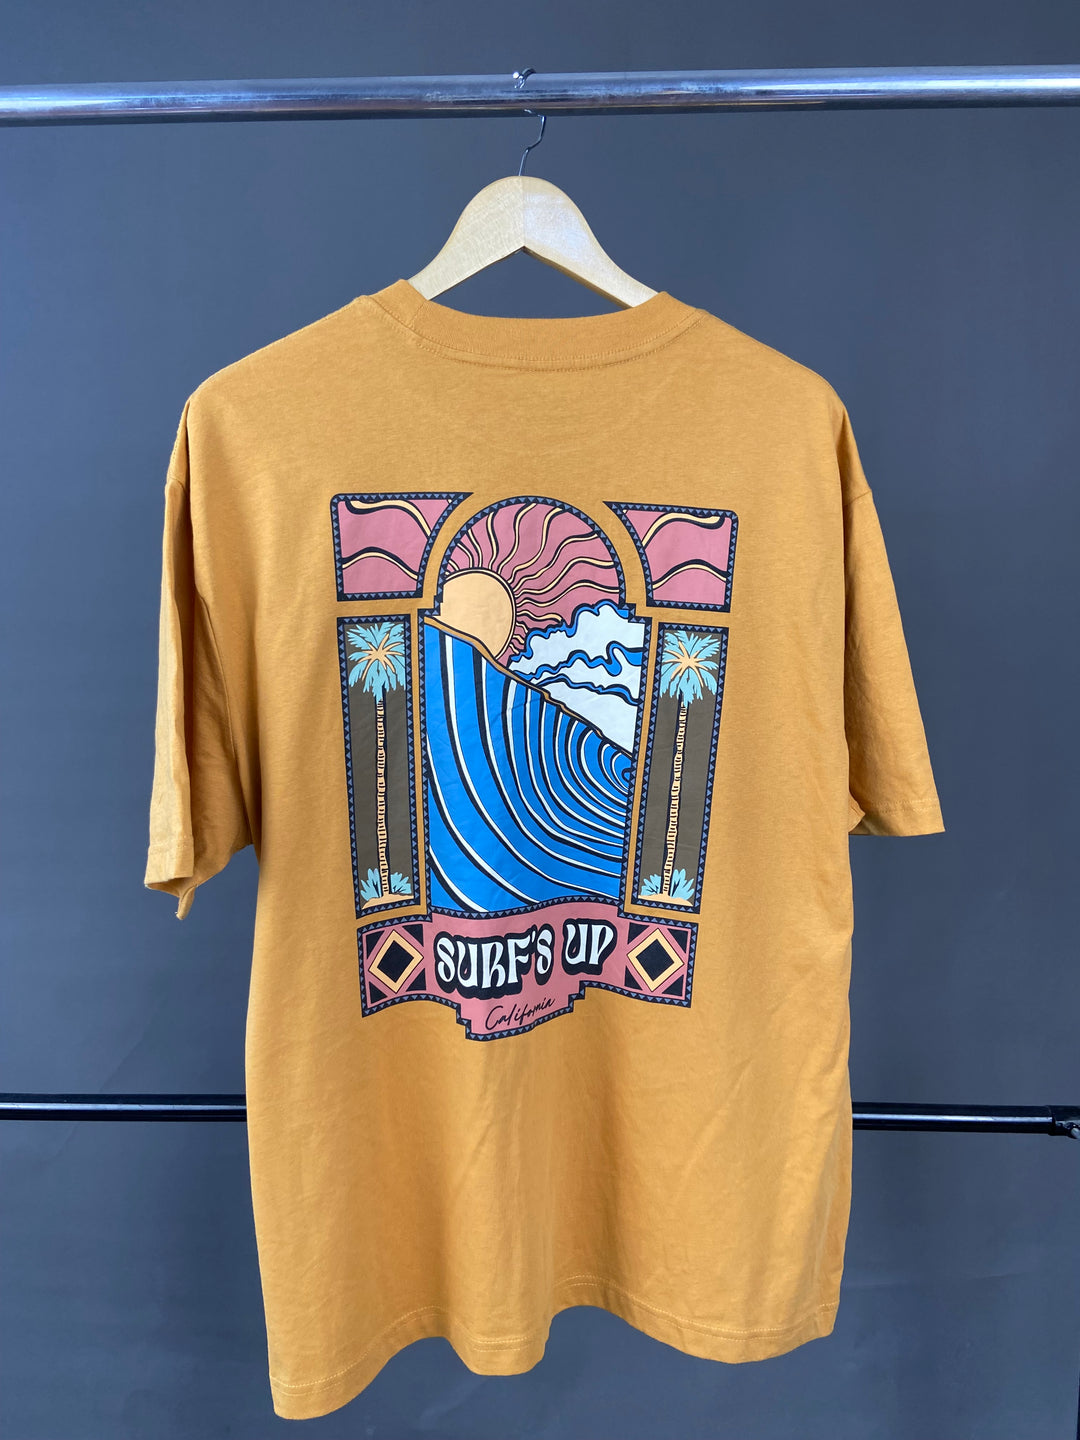 Garage surf up t-shirt